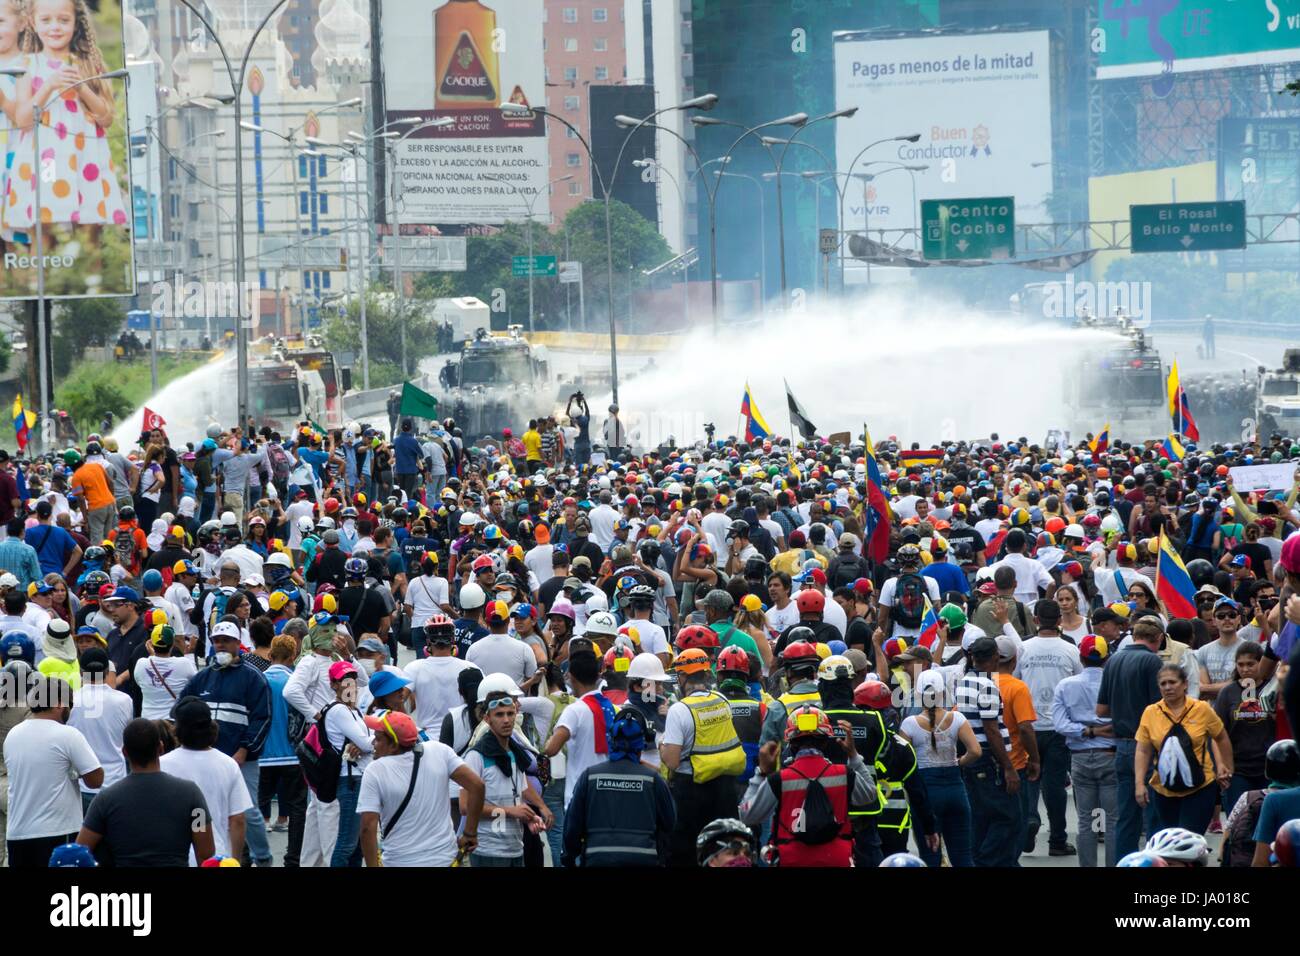 La Police nationale bolivarienne et de la Garde nationale, commencer à réprimer la marche de l'opposition. Le Bureau de l'unité démocratique (MUD) mobilise les manifestants Banque D'Images